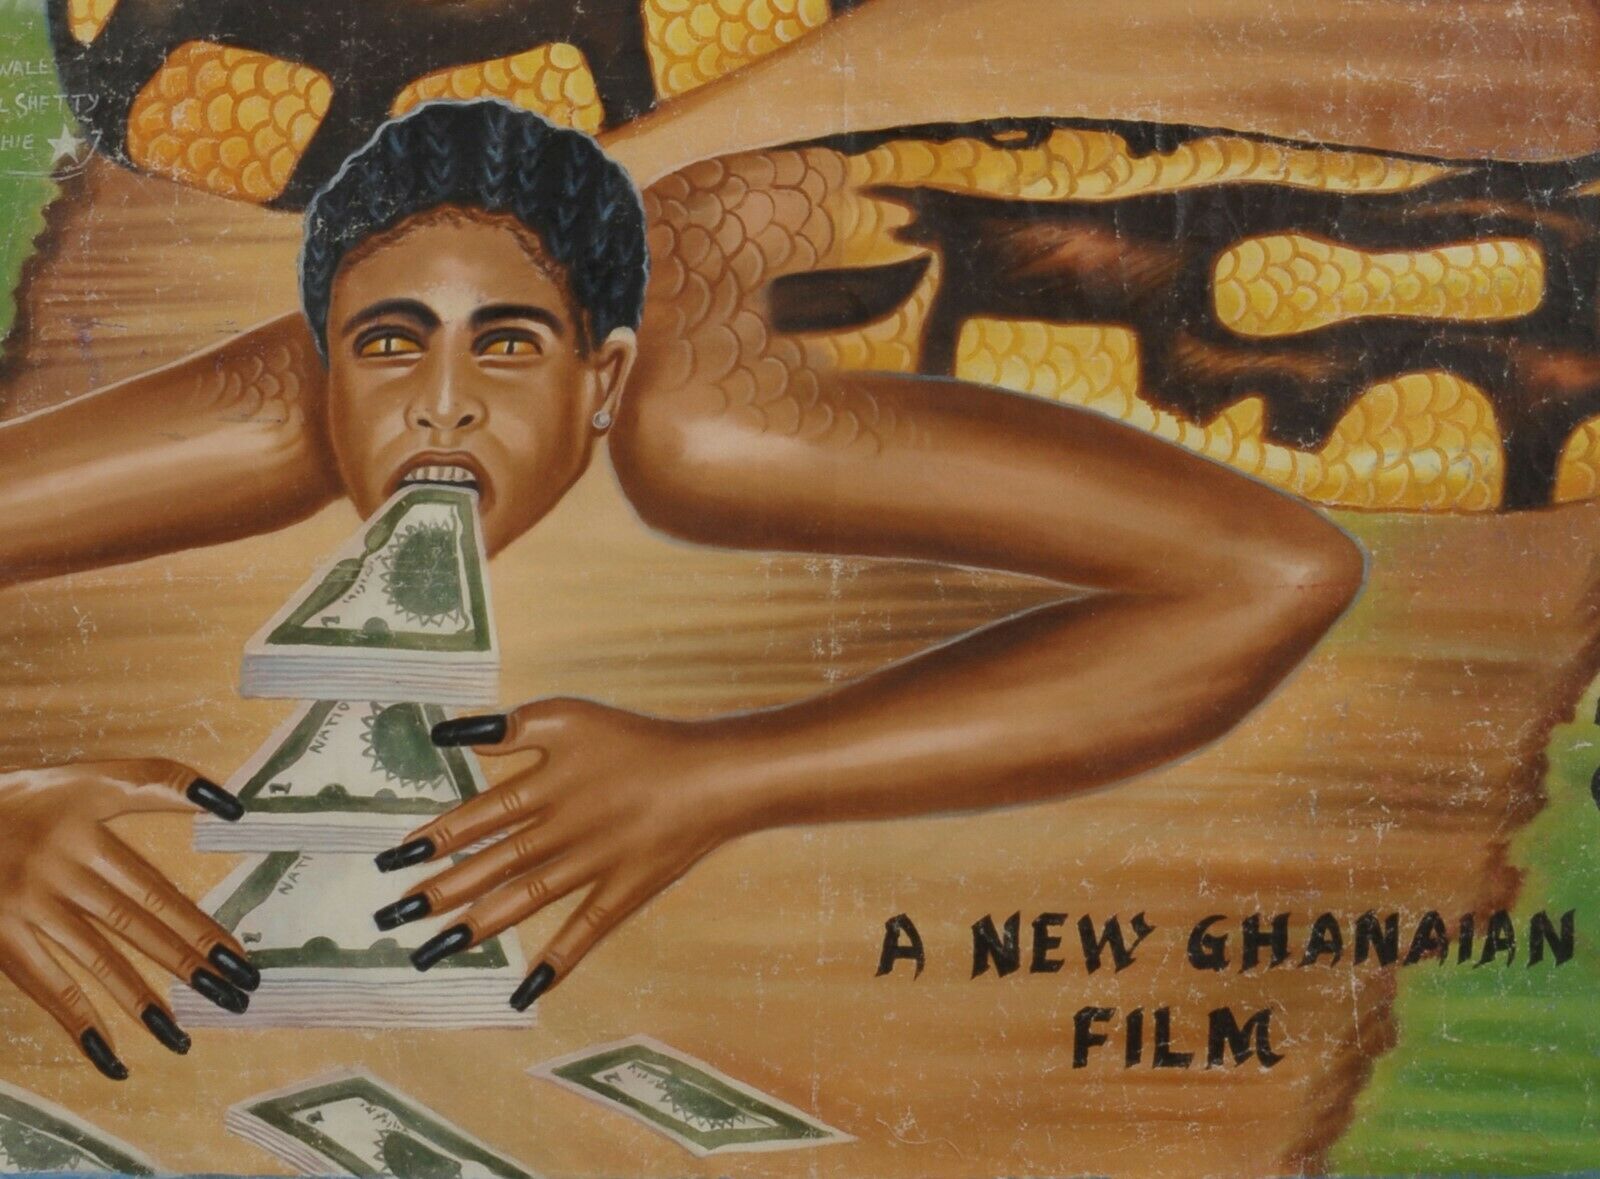 Αφίσα κινηματογράφου Αφρικανικής μοντέρνας τέχνης της Γκάνας ζωγραφισμένος στο χέρι καμβάς SESCOCASH - Tribalgh